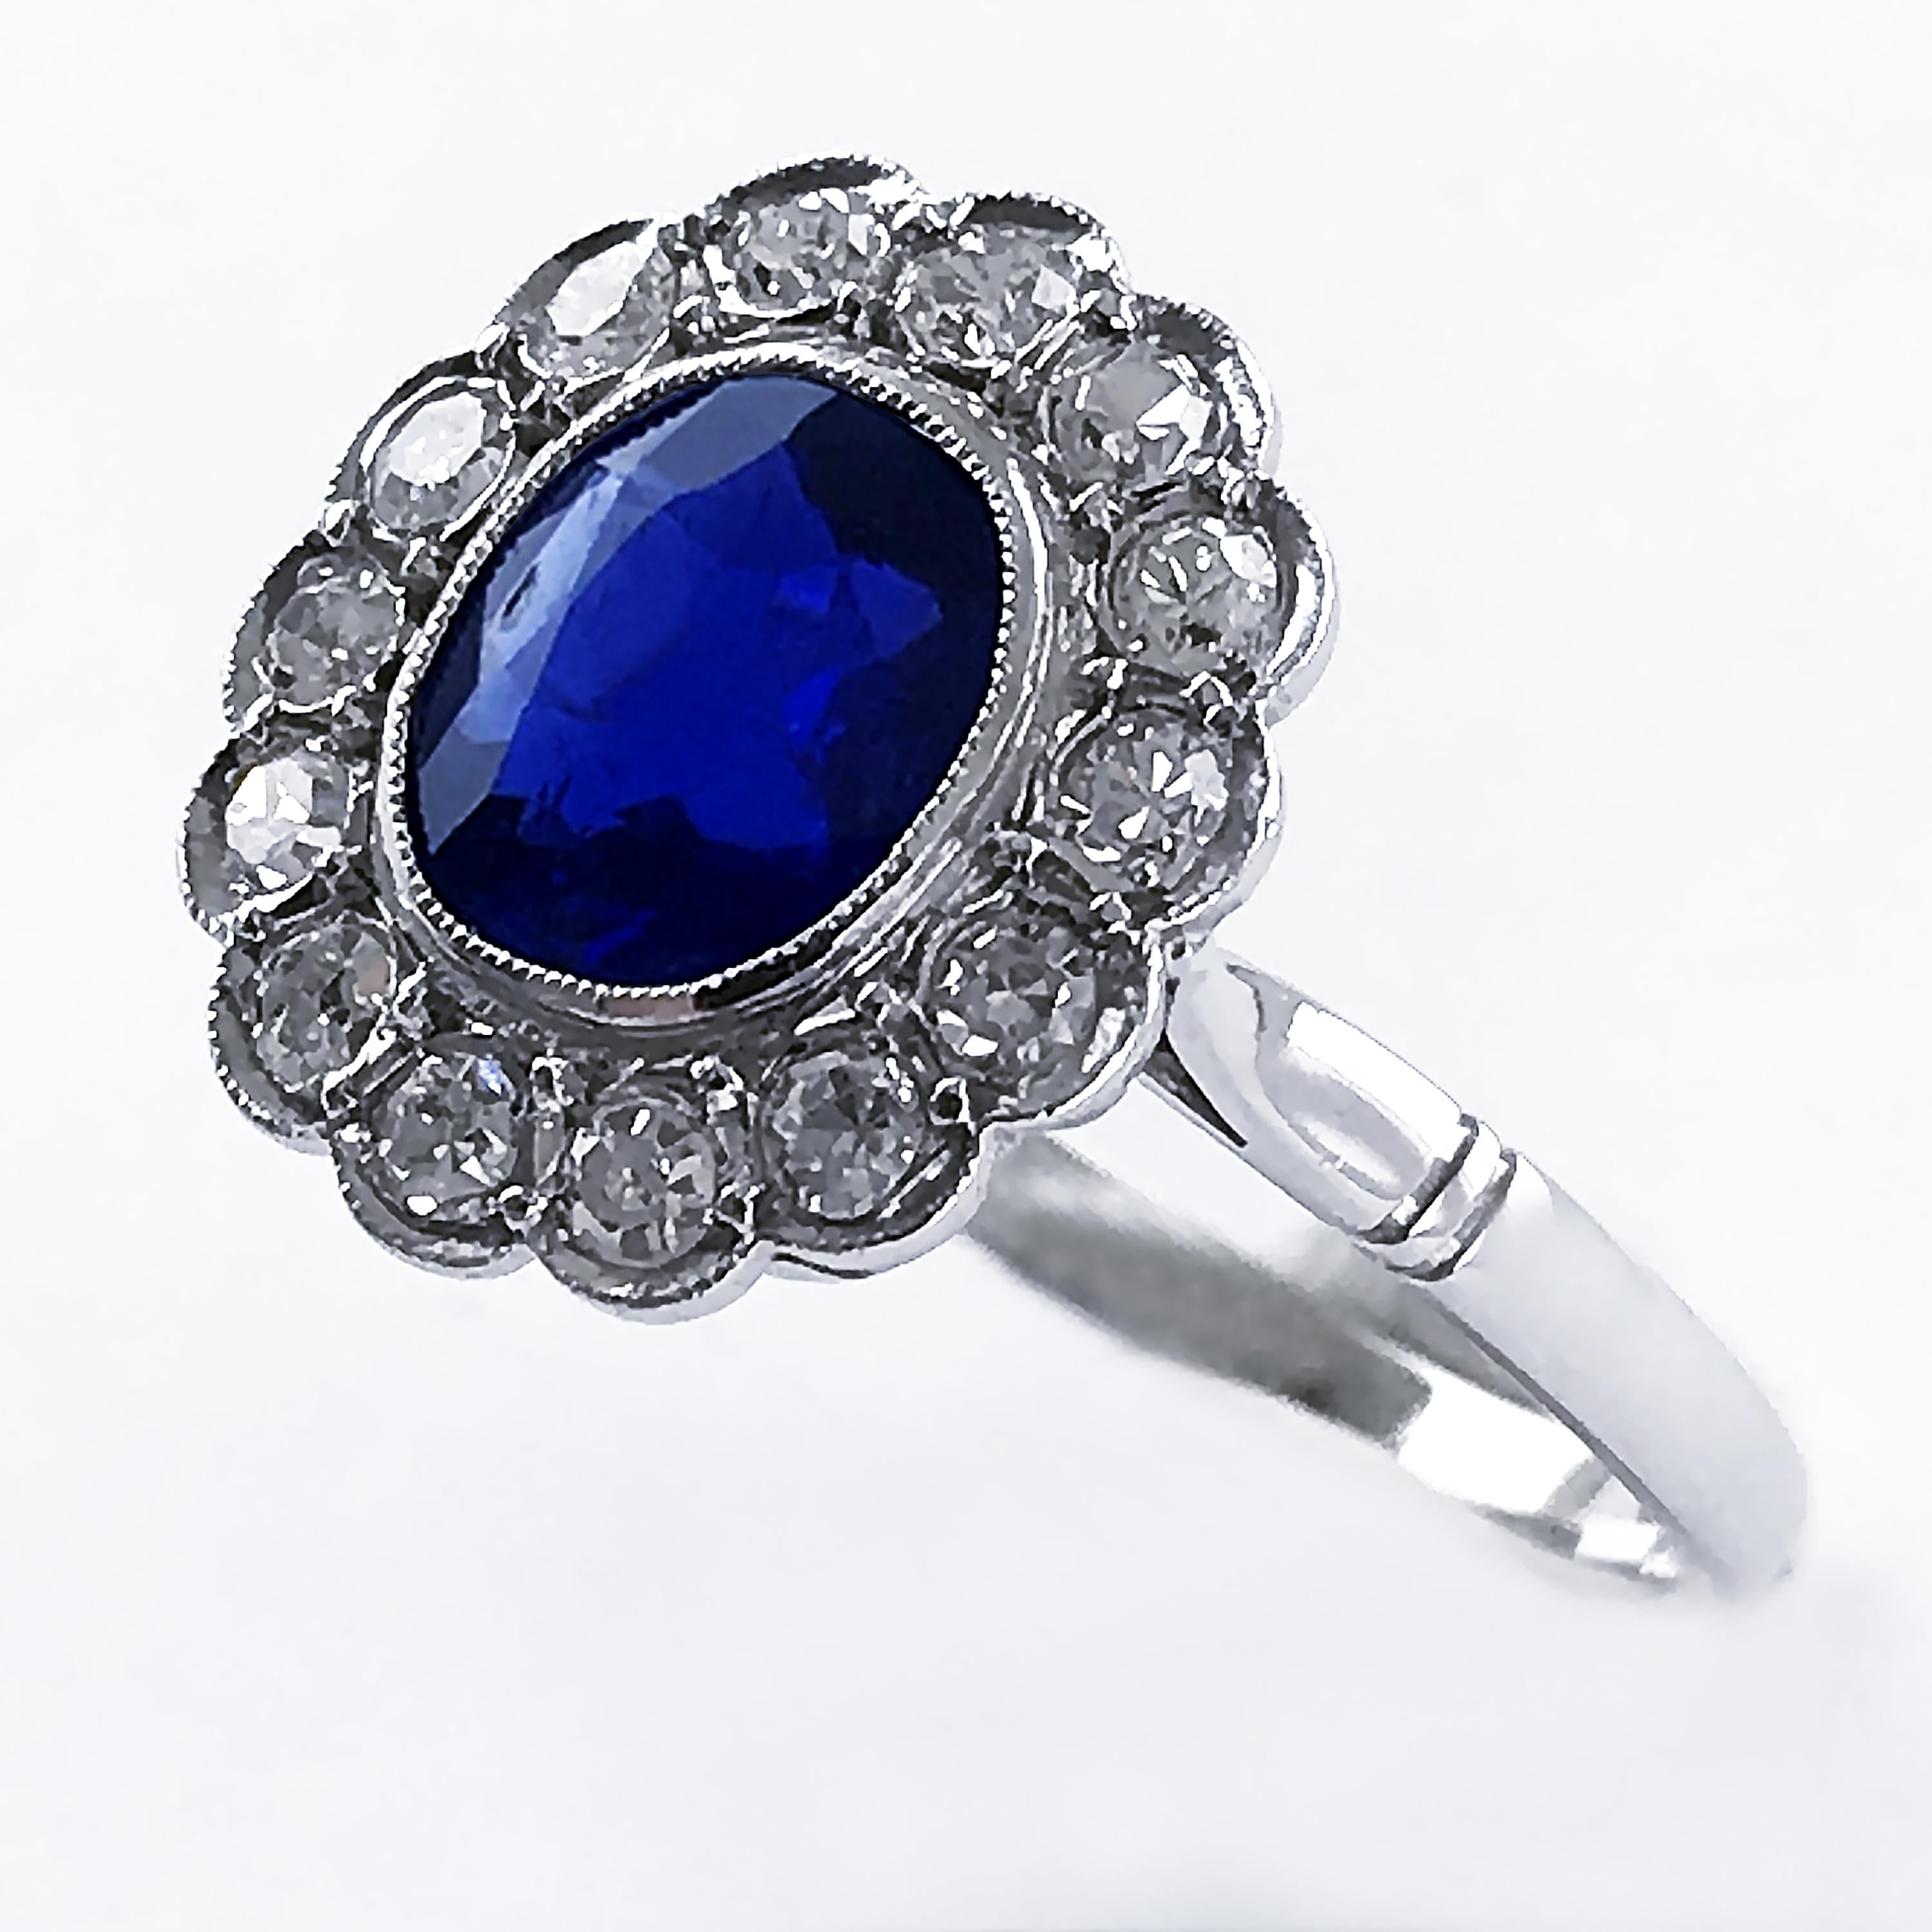 Oval Cut Art Deco Certificated Untreated Burma Blue Sapphire 1.44 Carat Diamond Ring